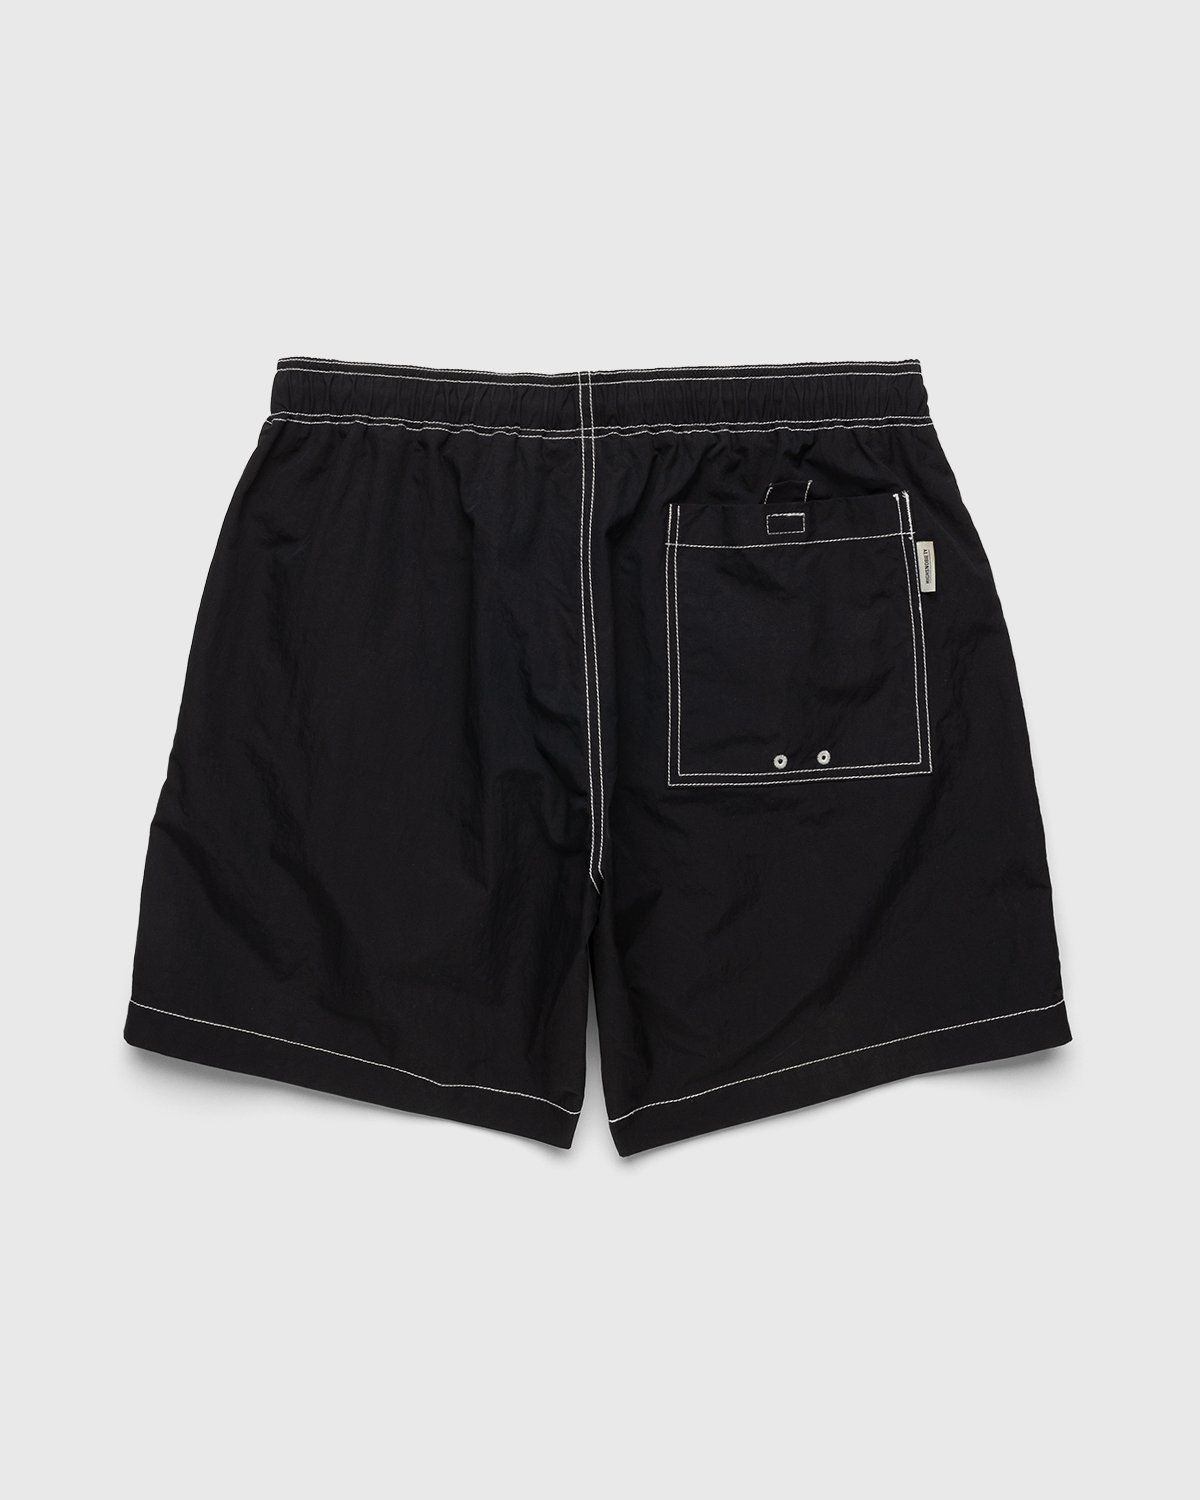 Highsnobiety – Contrast Brushed Nylon Water Shorts Black - Active Shorts - Black - Image 2